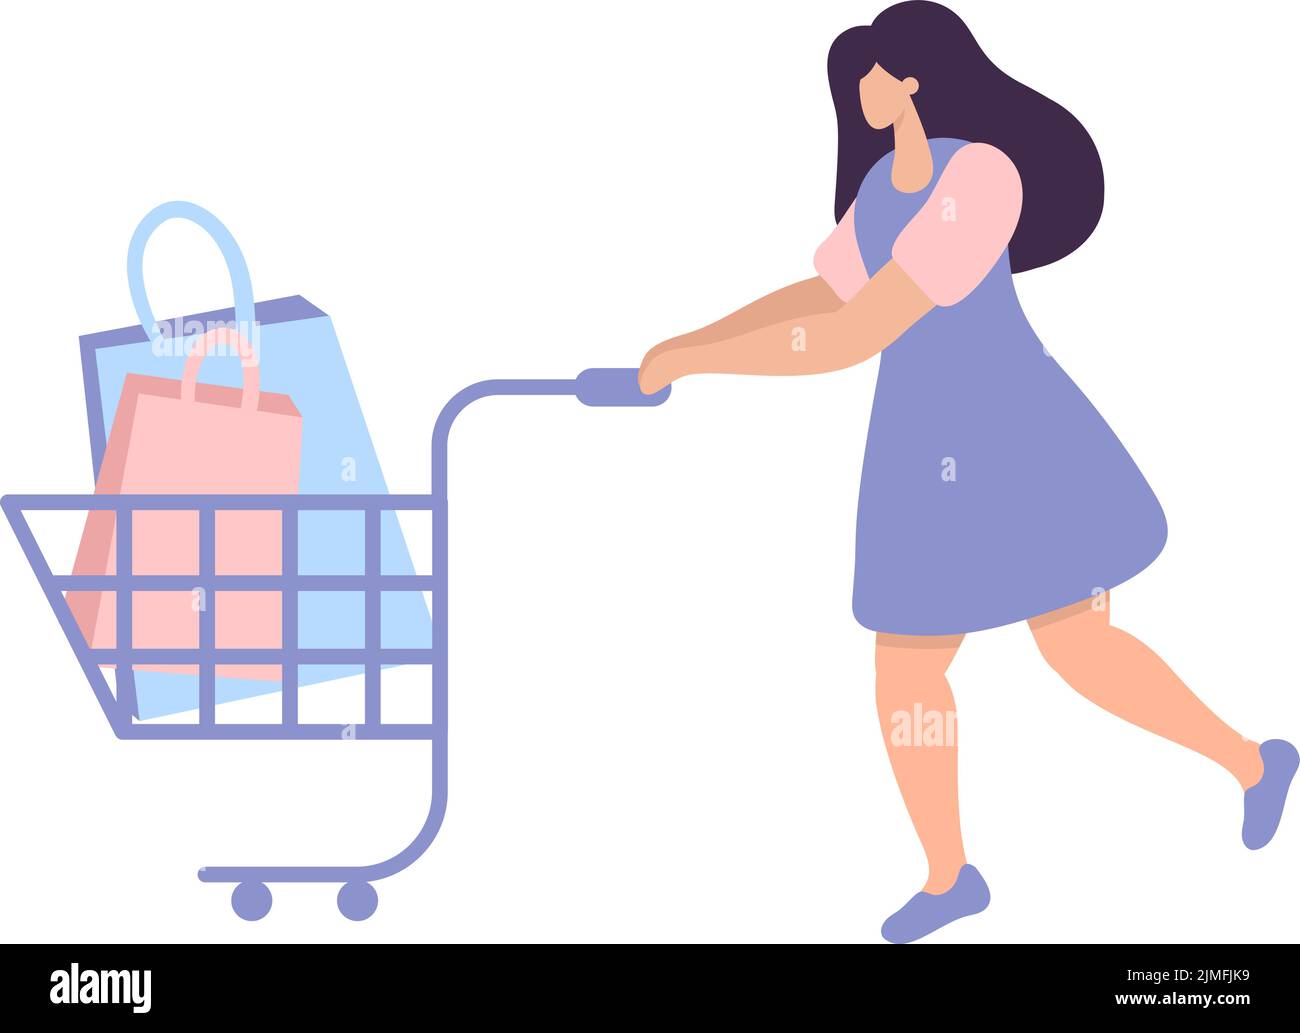 Mujer joven caminando con coloridas bolsas de compras en el carro. Concepto de compras de marketing creativo de que el cliente gana recompensa o premio al comprar productos Ilustración del Vector